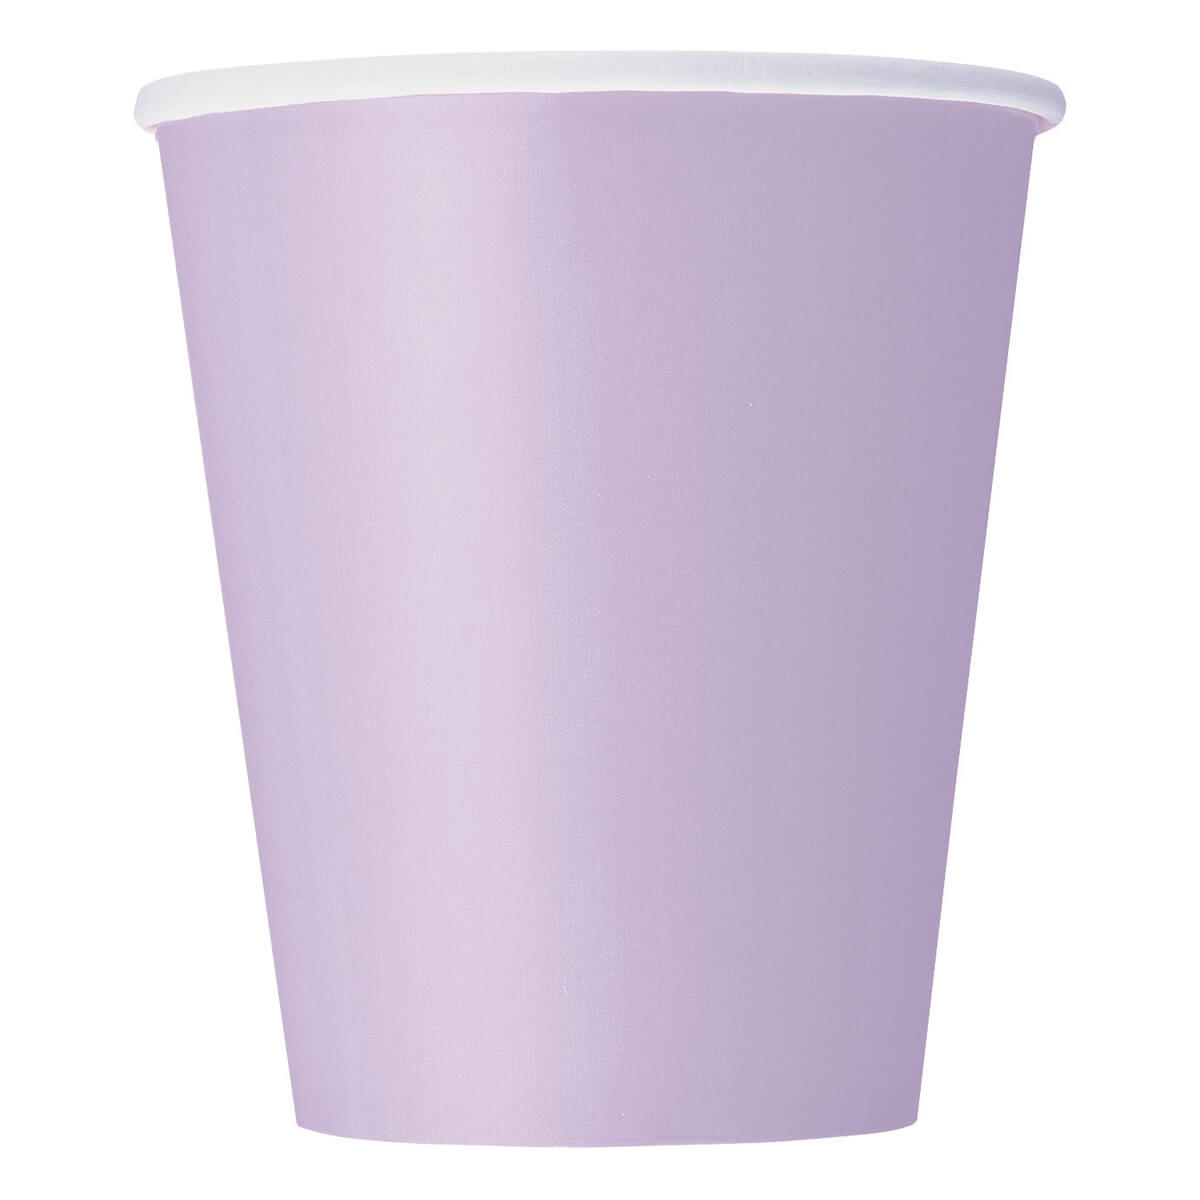 Pappbecher Lavendel 270ml, 8 Stück